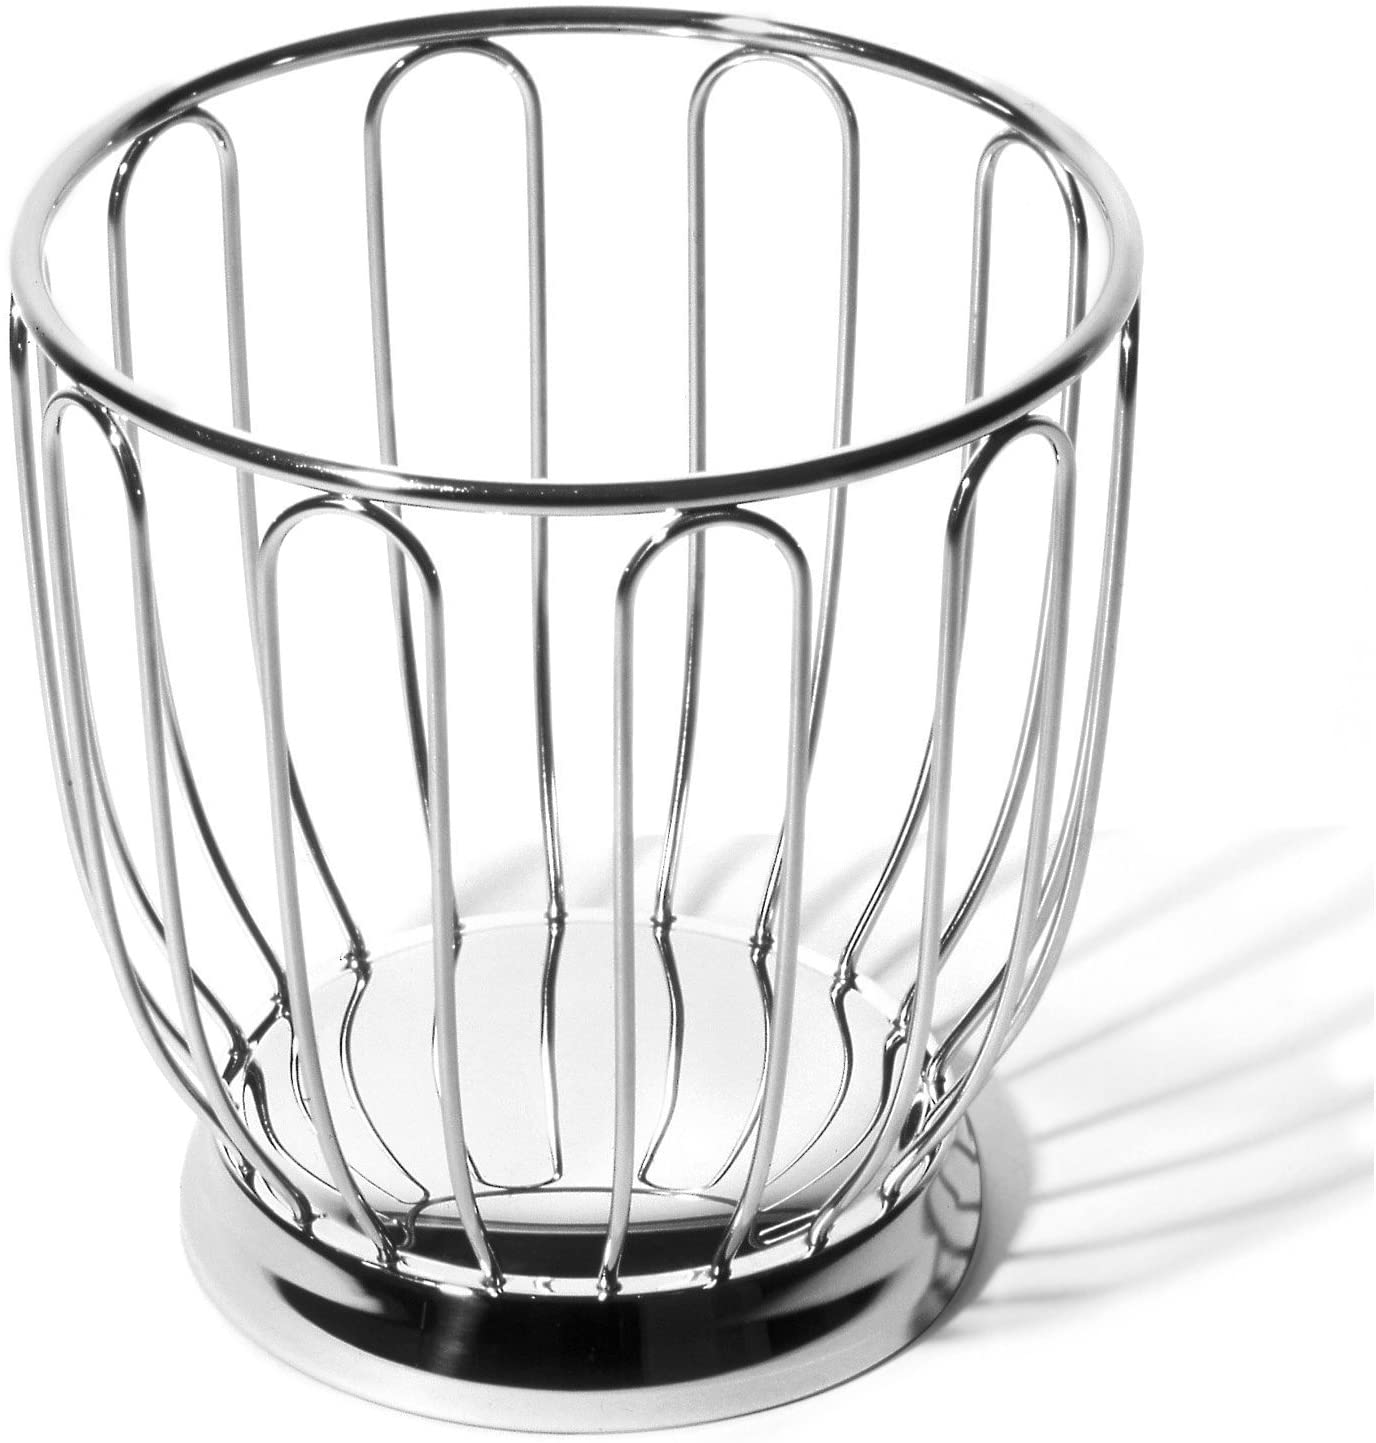 Alessi Citrus Basket, Medium by Alessi